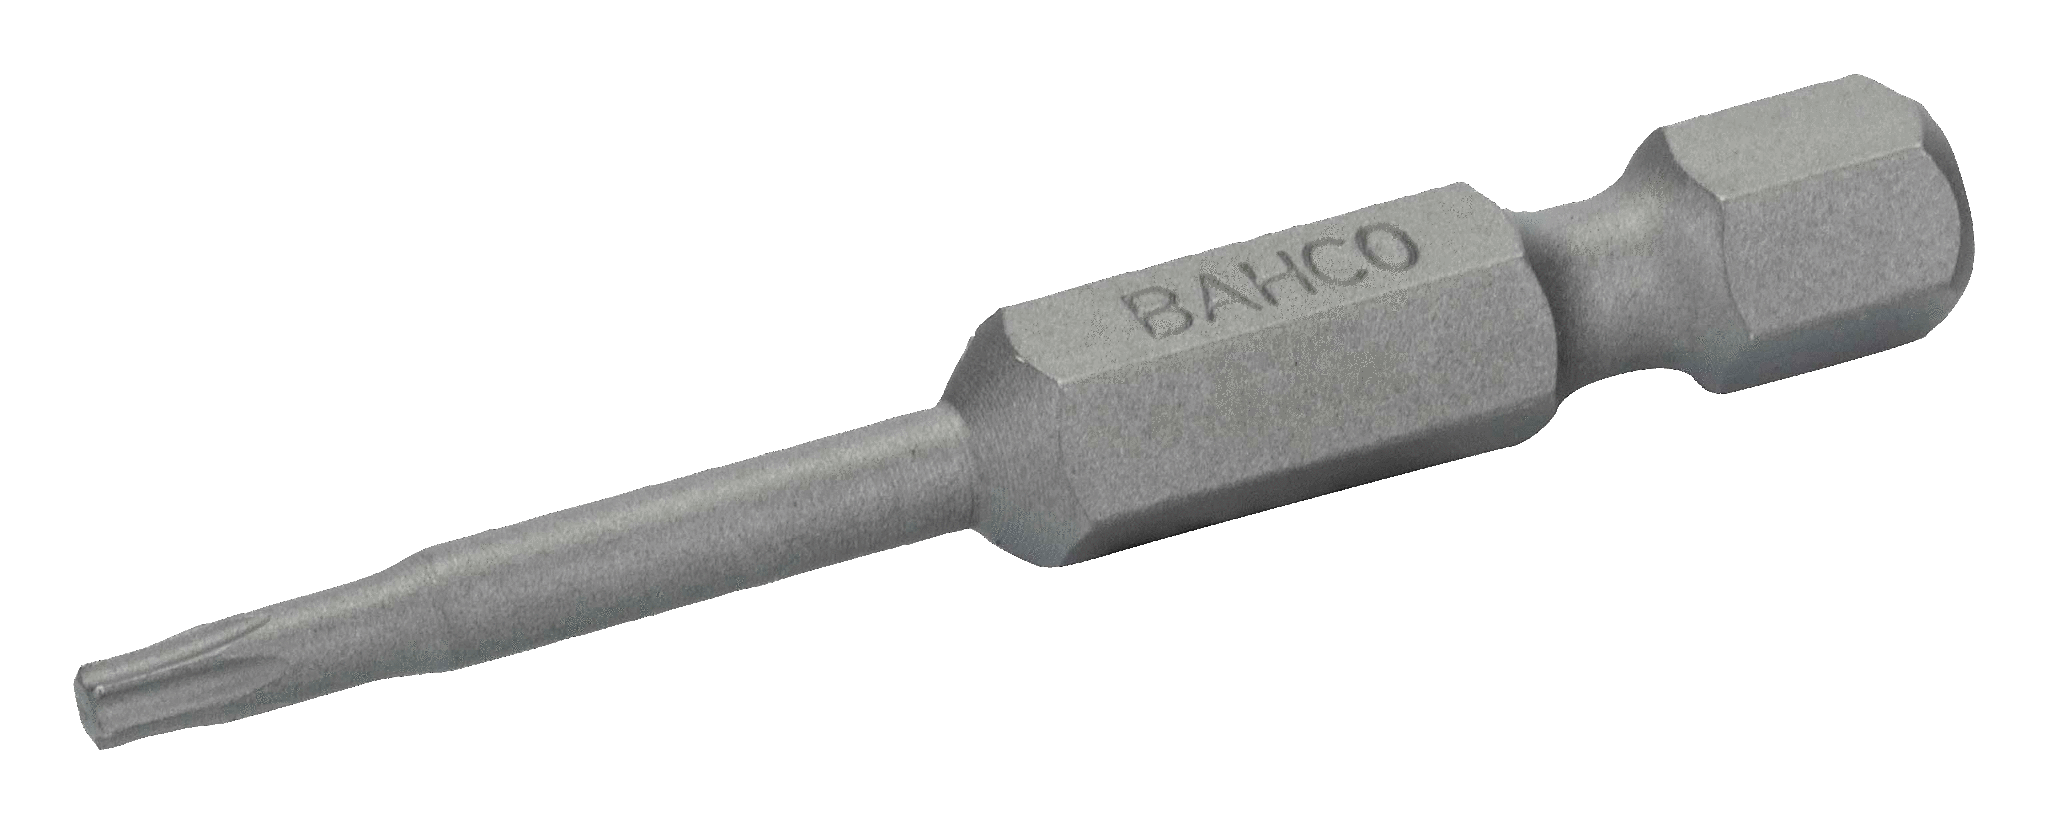 картинка Стандартные биты для отверток Torx®, 50 мм BAHCO 59S/50T27 от магазина "Элит-инструмент"